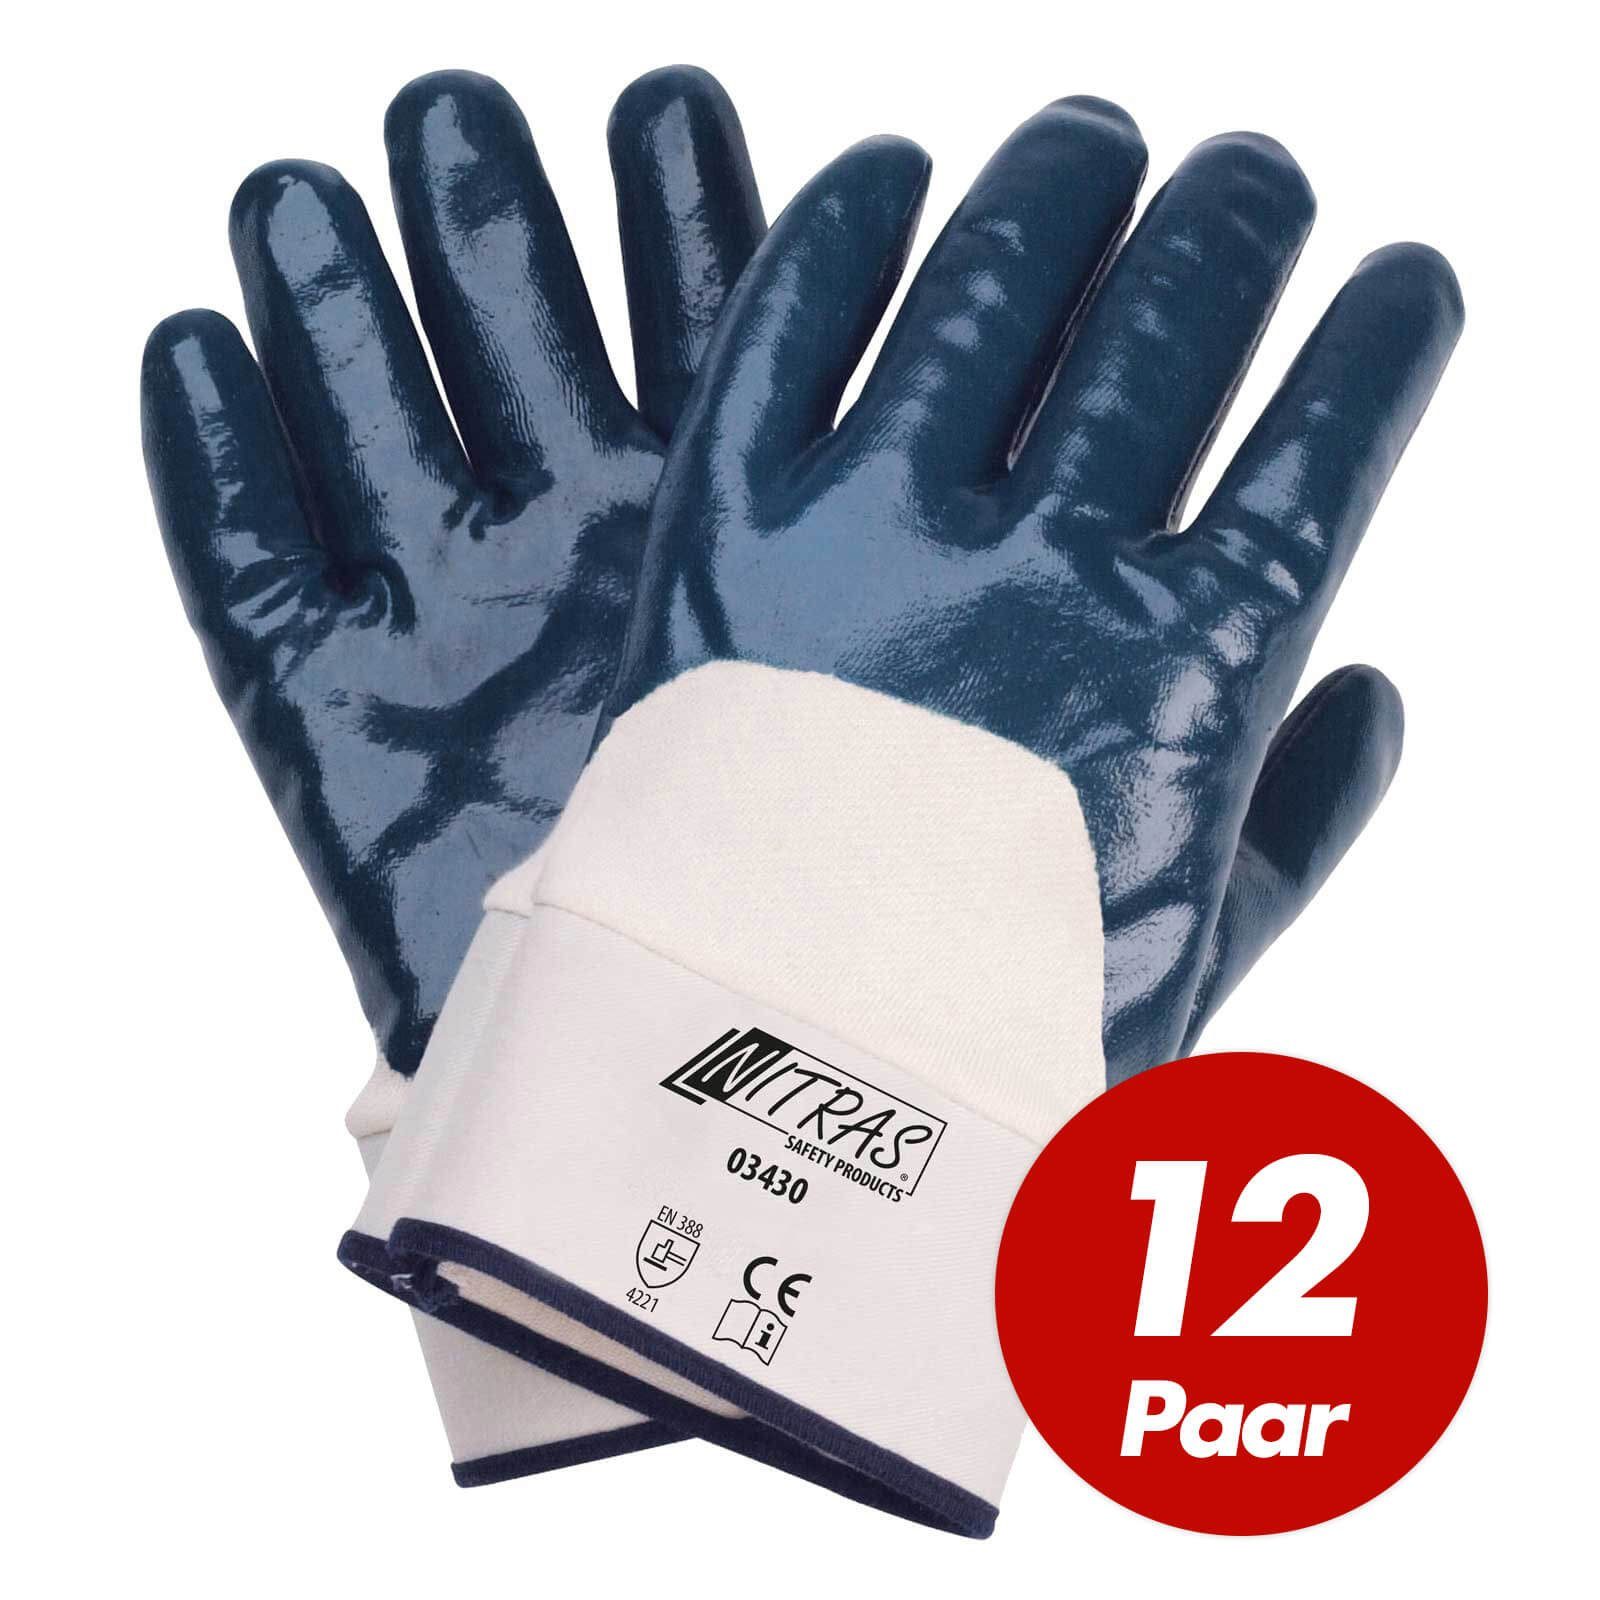 Nitras Nitril-Handschuhe NITRAS Nitrilhandschuhe 03430 Paar - Handschuhe 12 Beschichtung (Spar-Set) 3/4